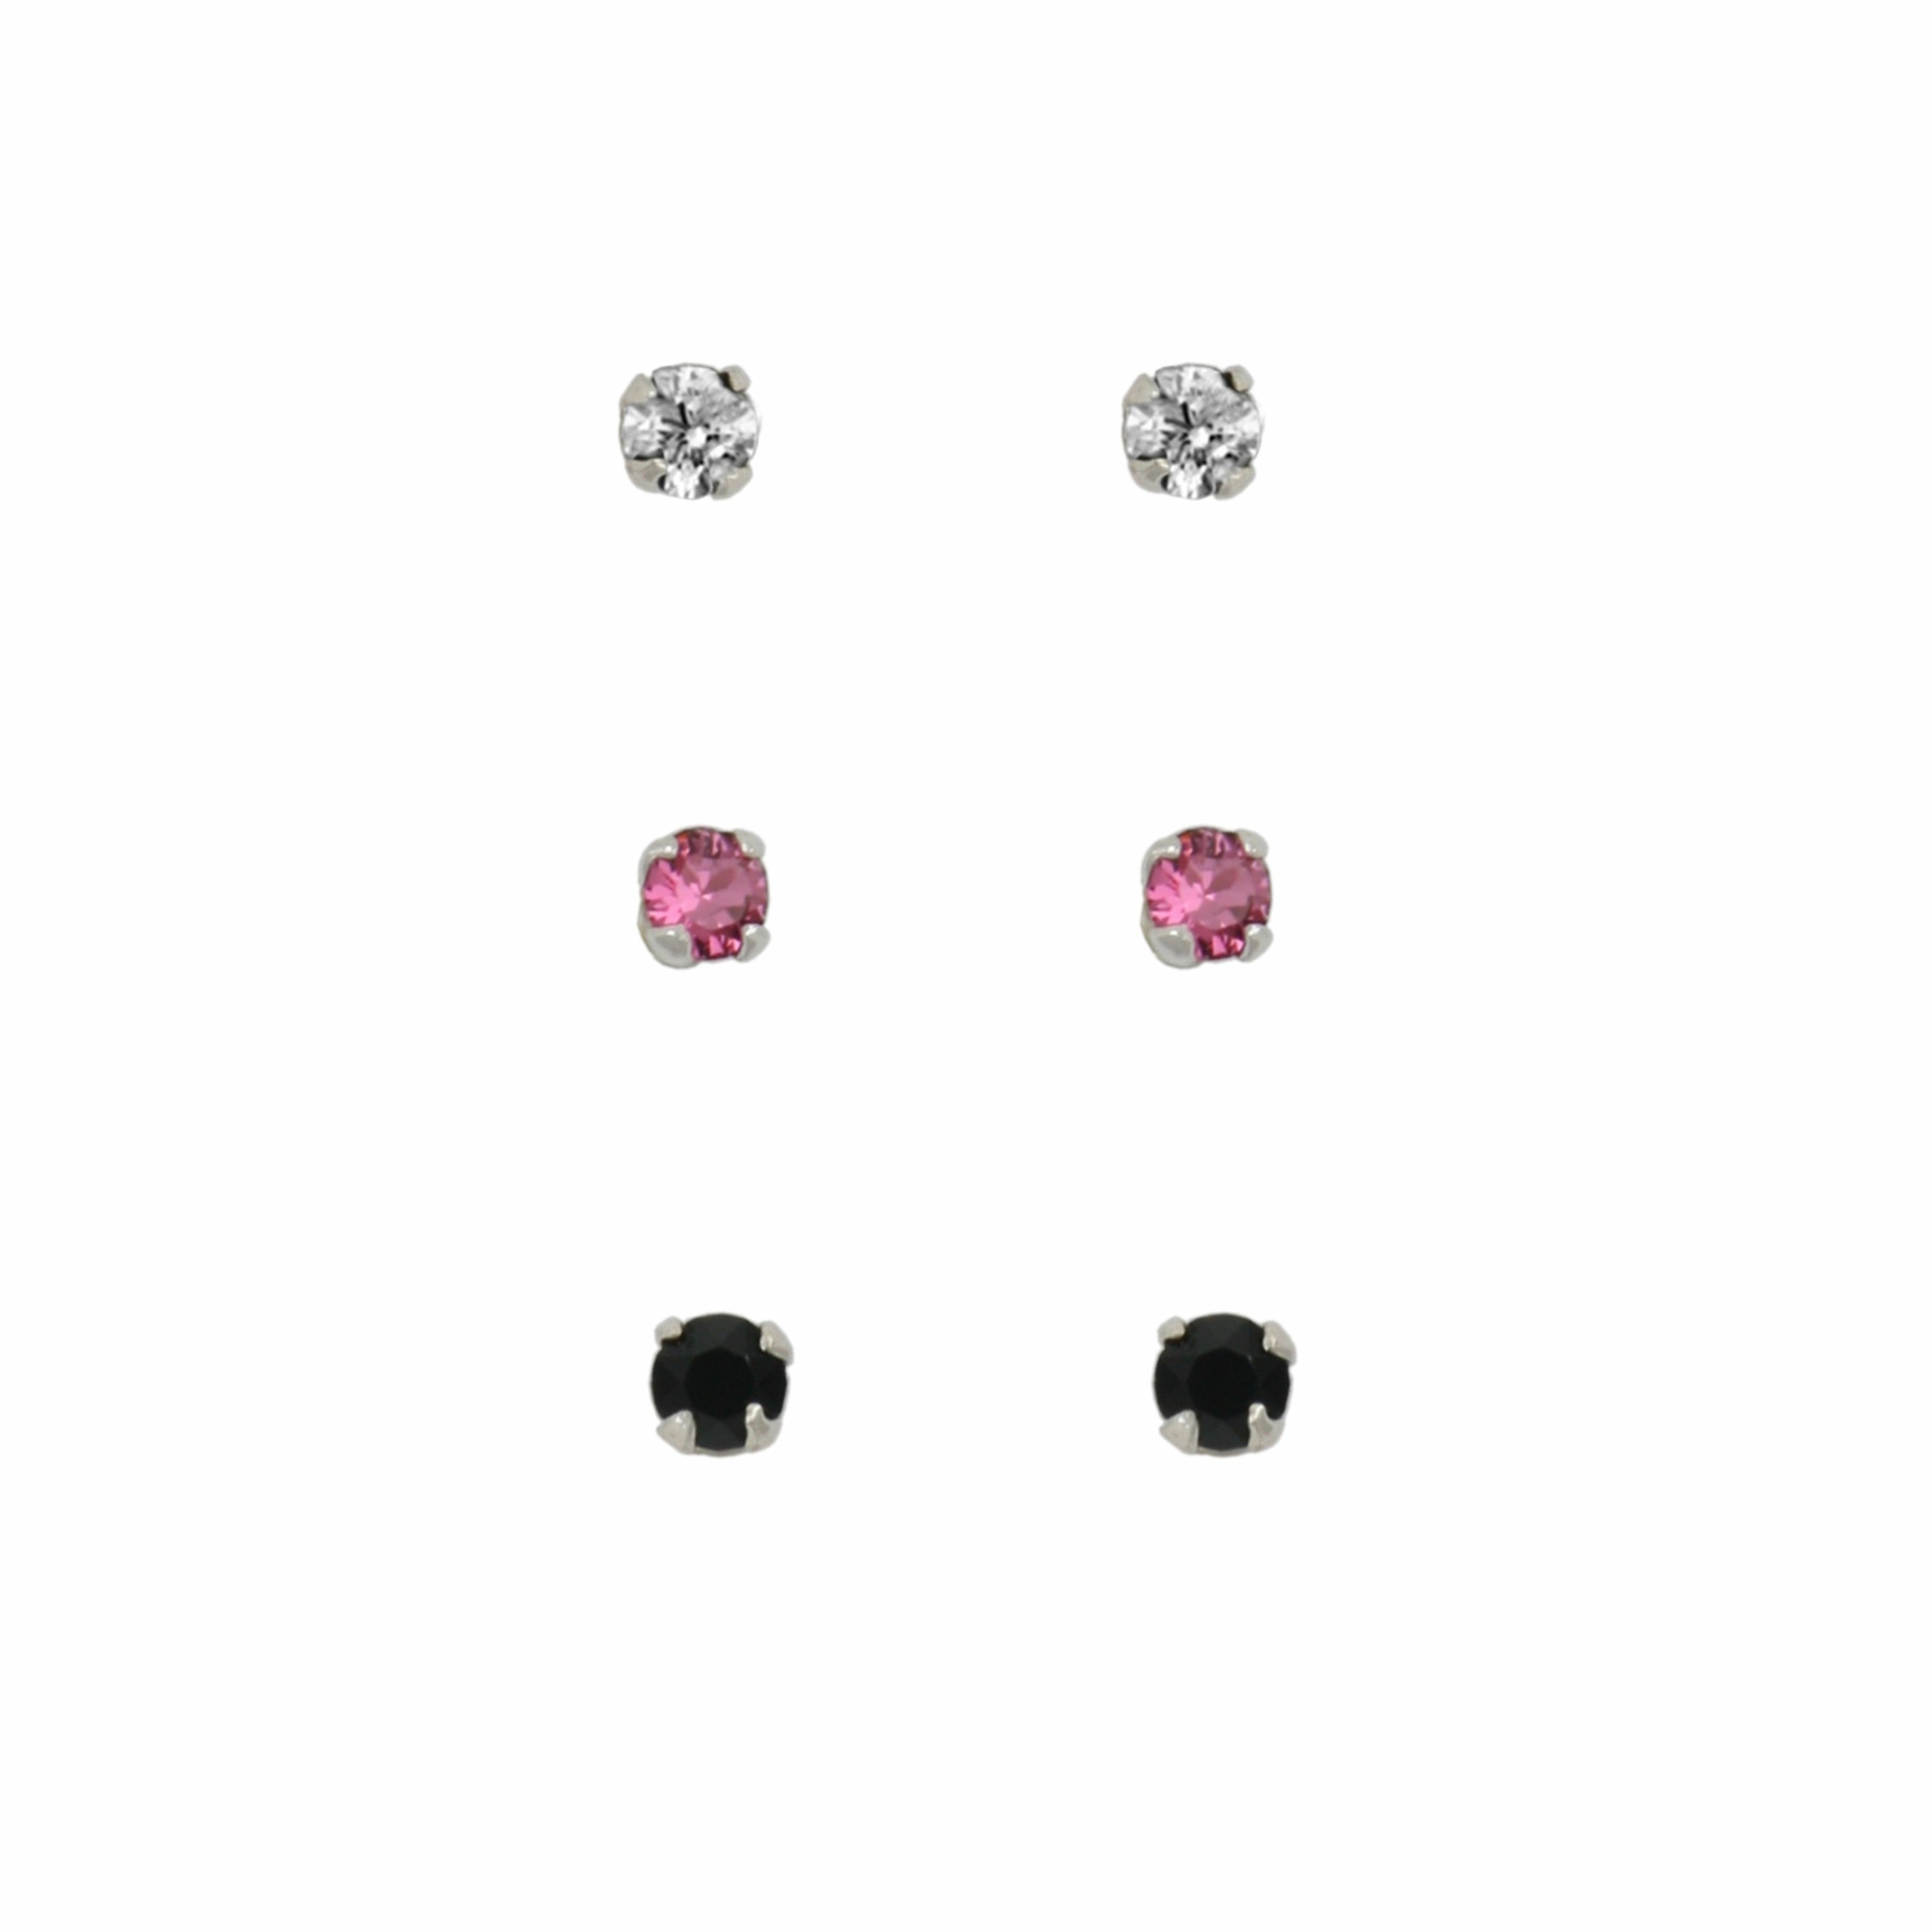 Sterling Silver Petite Set of 3 Stud Earrings, Clear, Pink & Black